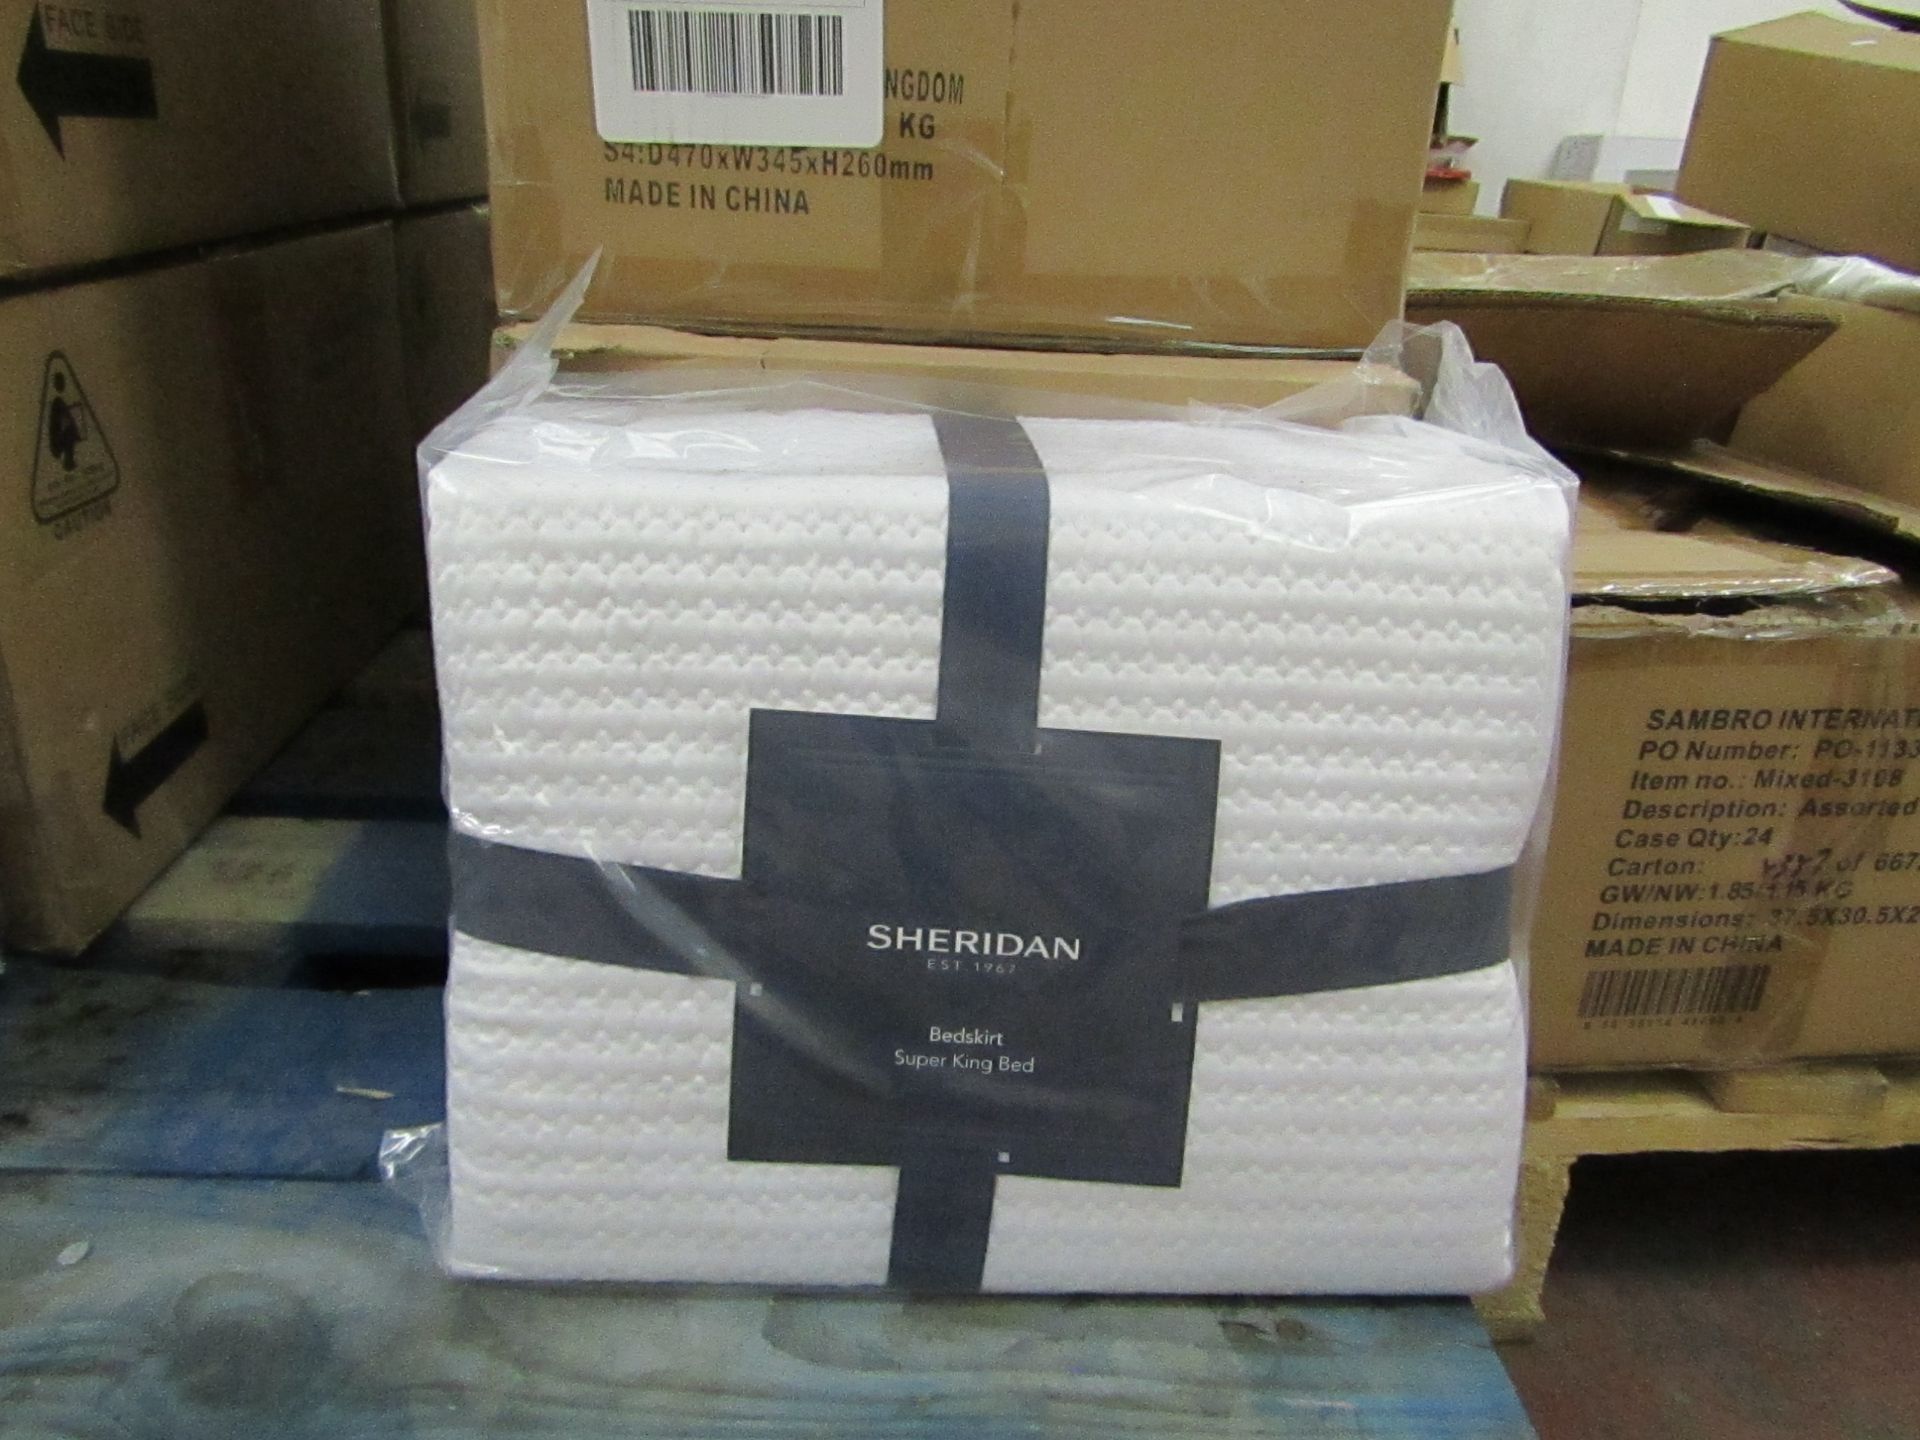 Sheridan - Christobel Bedskirt - Colour White - Size Super-King - New & Packaged. RRP £75.